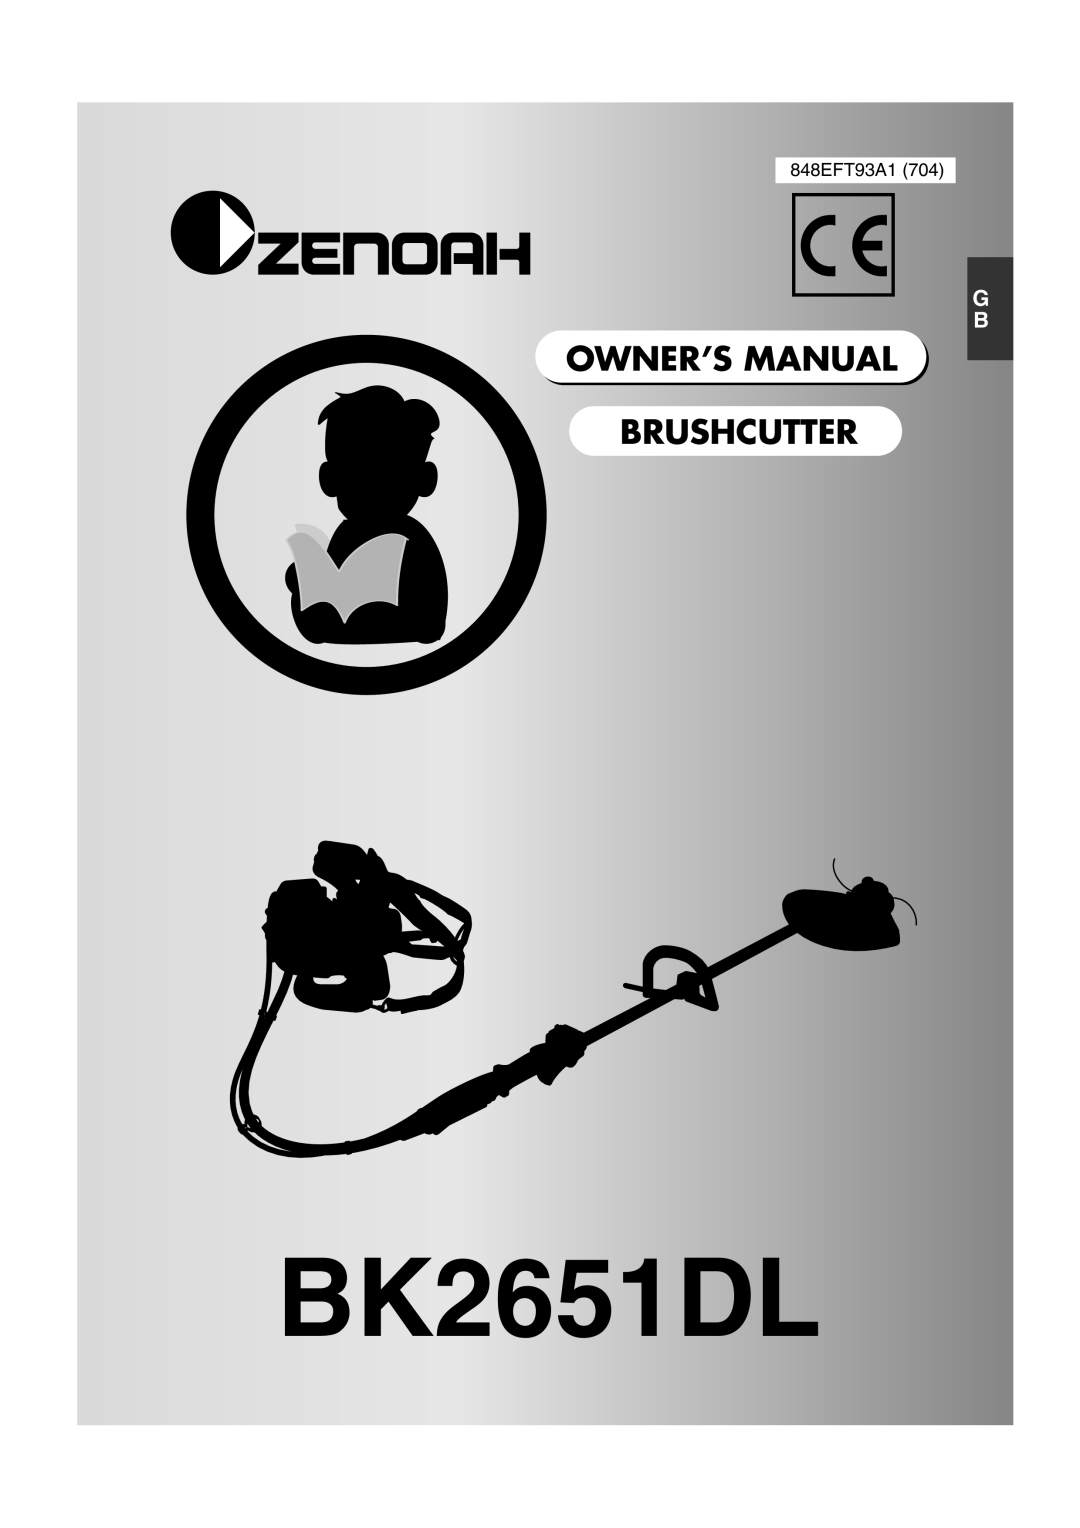 Zenoah BK2651DL owner manual 848EFT93A1, Owner’S Manual Brushcutter 